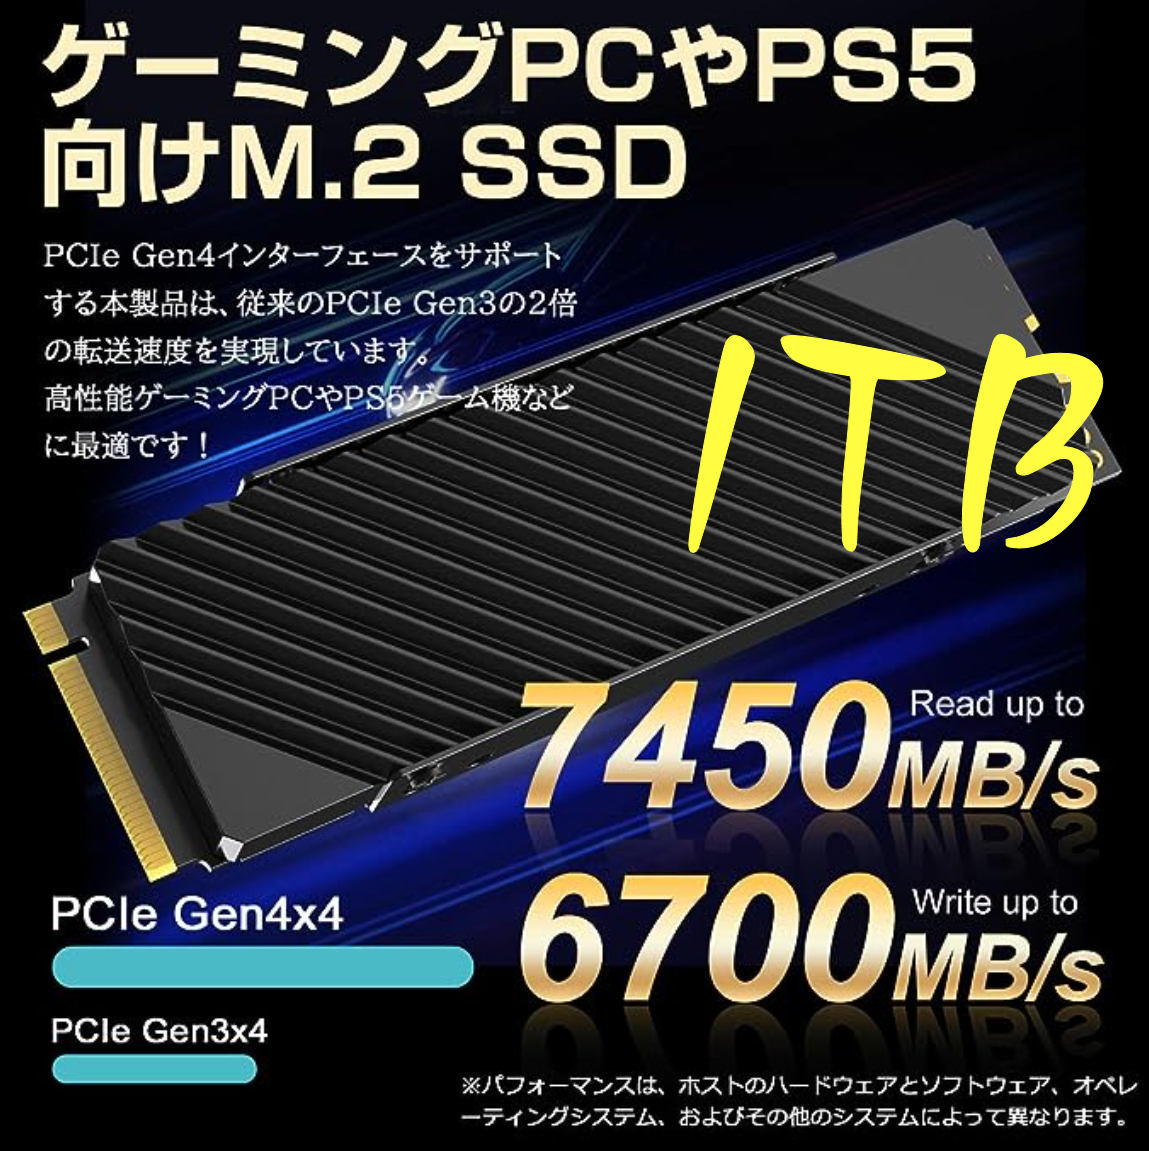 [ сильнейший легенда ]Z440 CPU(18 core 36s красный ) NVMe:1TB HDD:1TB 64GB(DDR4) DUAL-RX5700XT Challenger:8G(GDDR6)